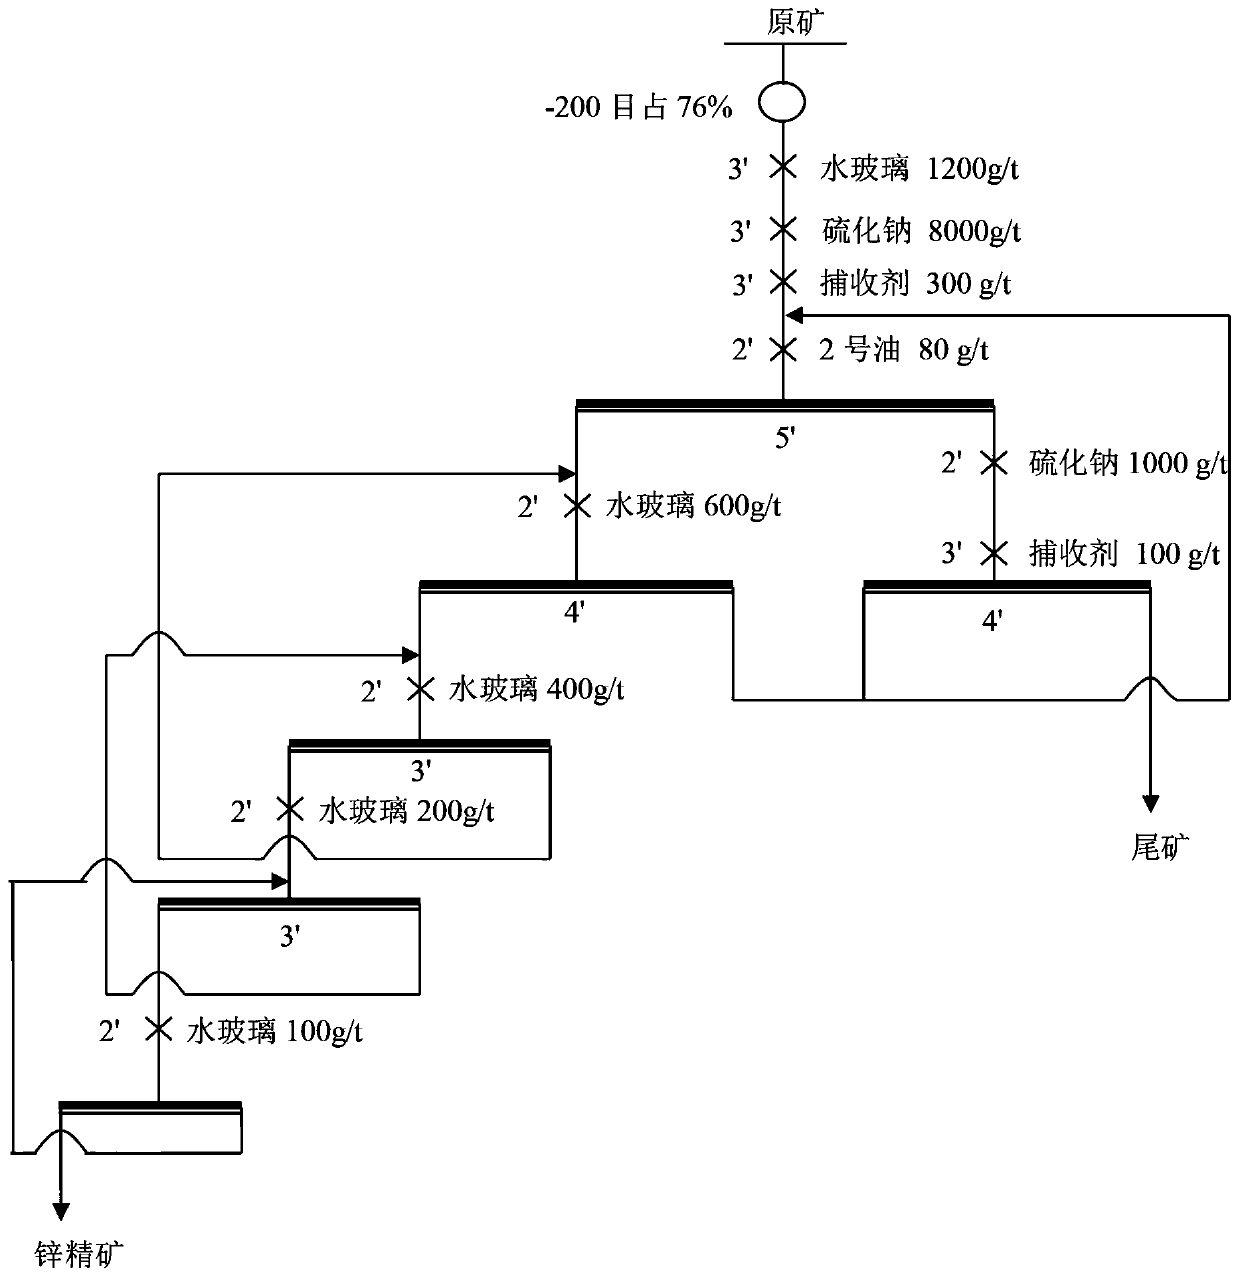 Application method of novel surfactant in zinc oxide ore flotation